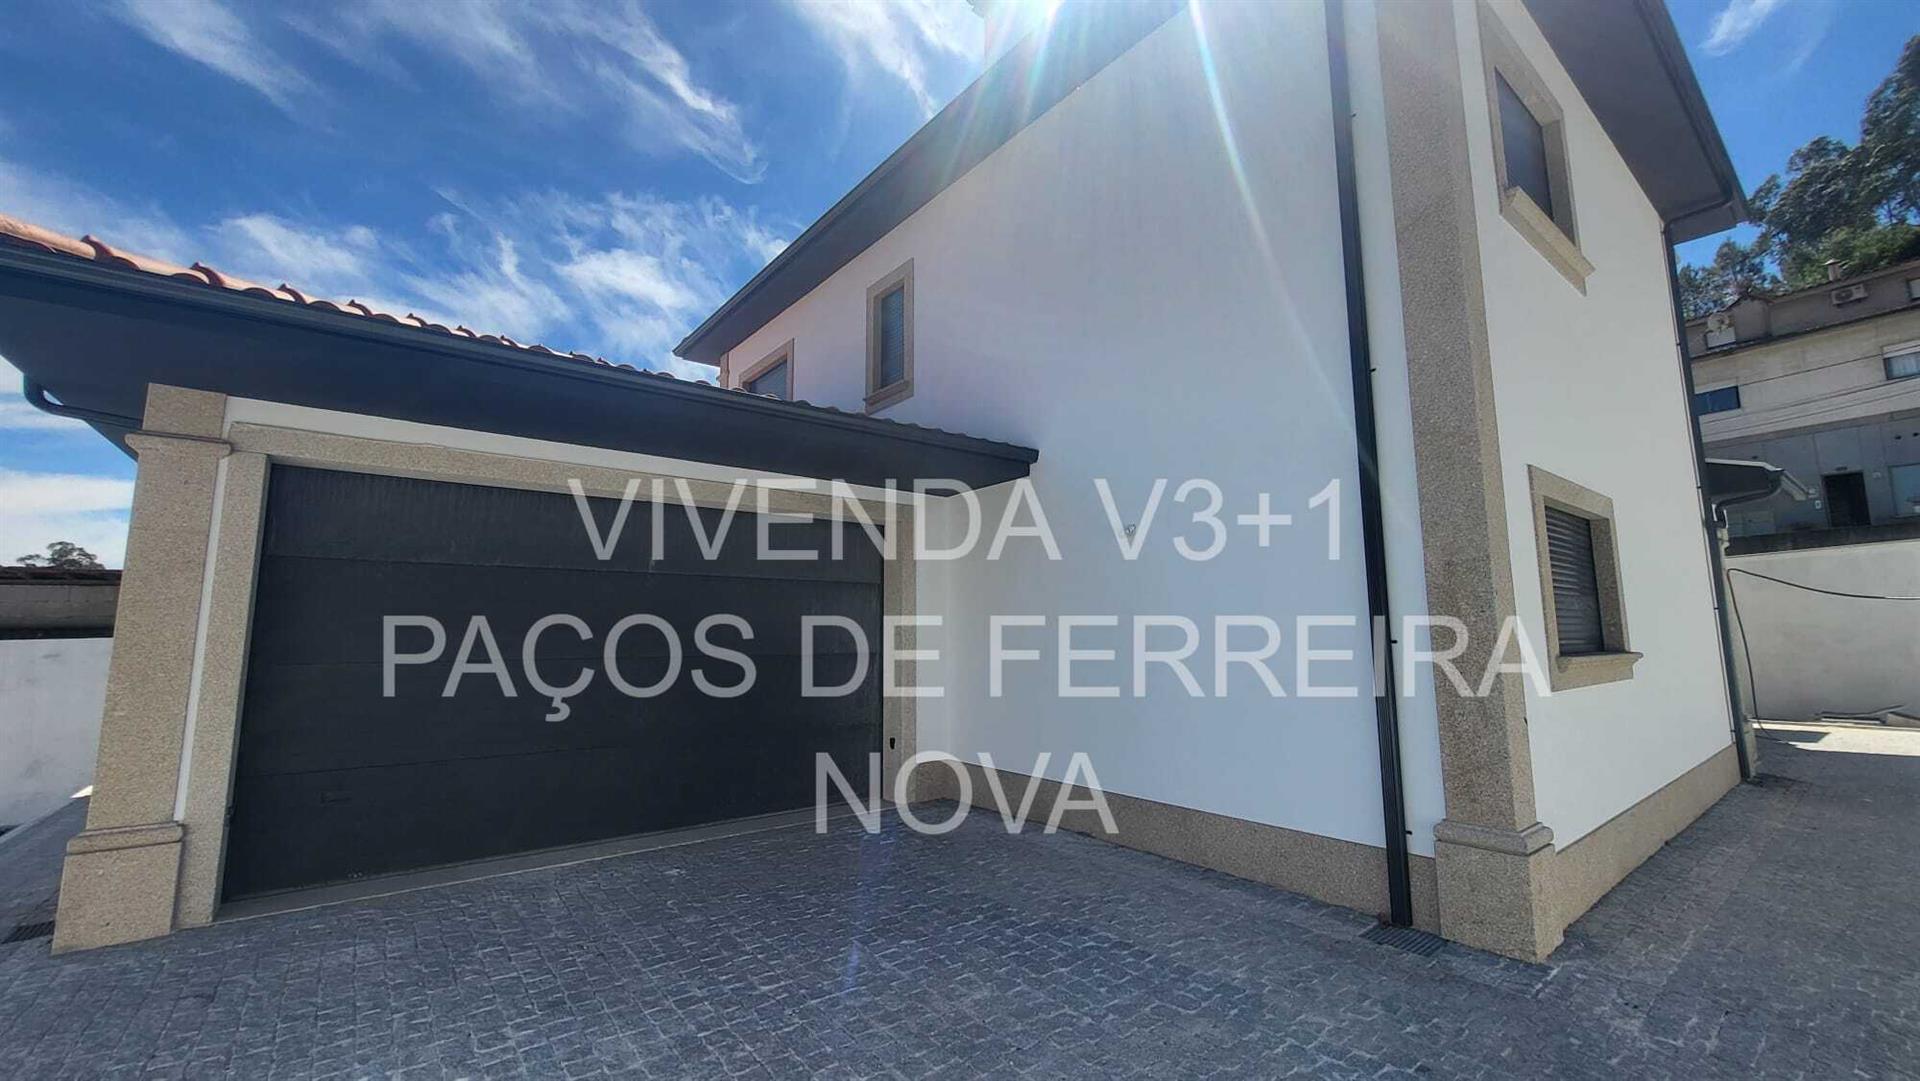 Vivenda V3+1 Paços de Ferreira – 268m2 - Nova